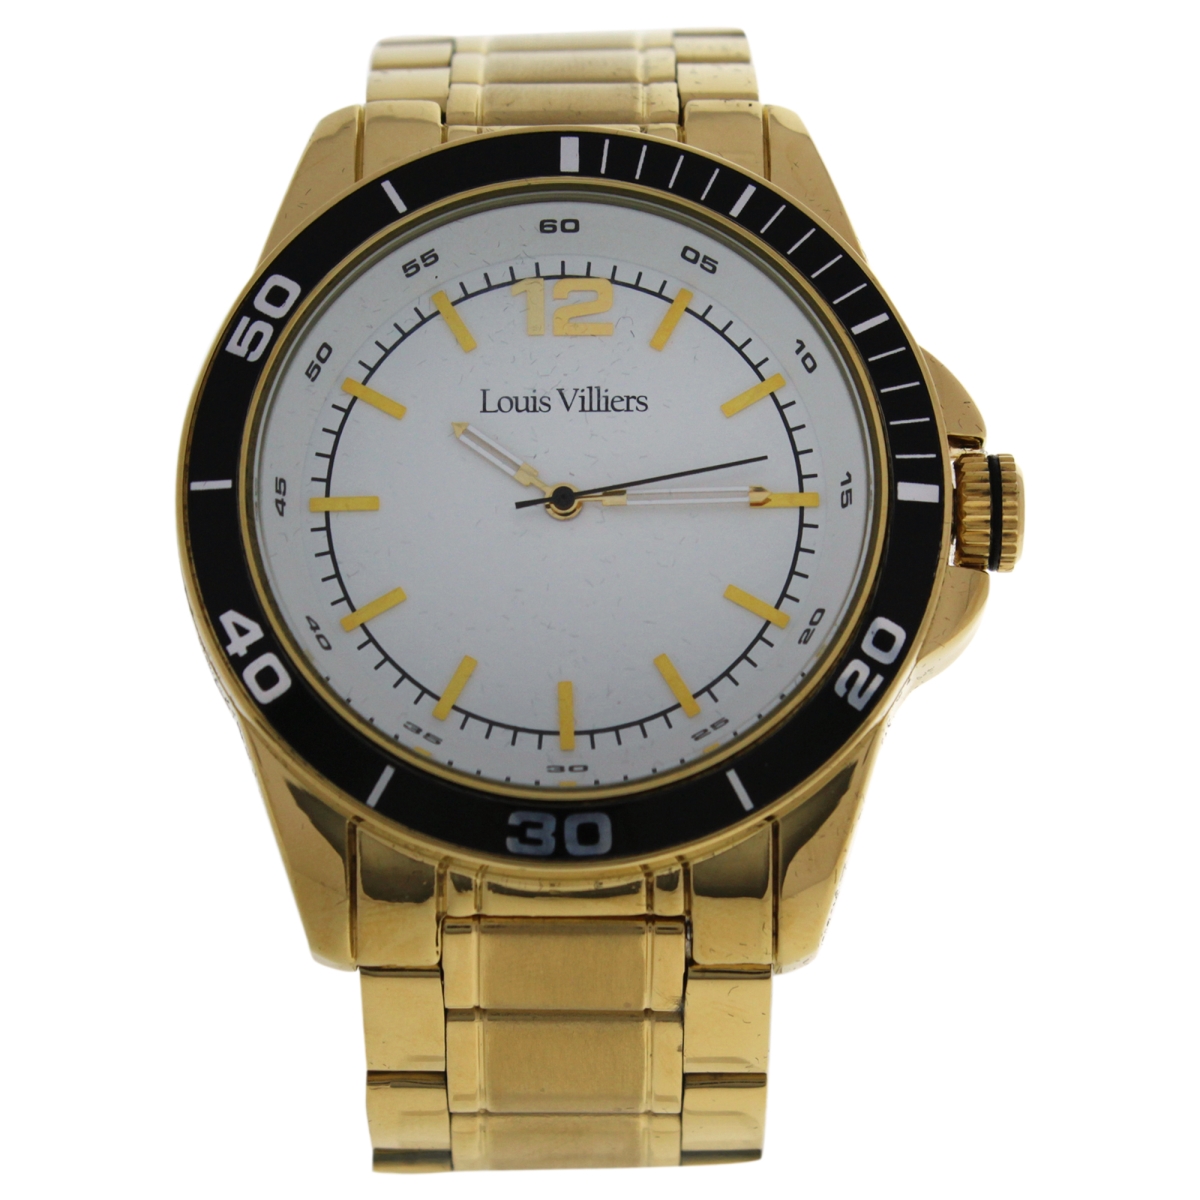 M-WAT-1303 LV1009 Stainless Steel Bracelet Watch for Men - Gold -  Louis Villiers